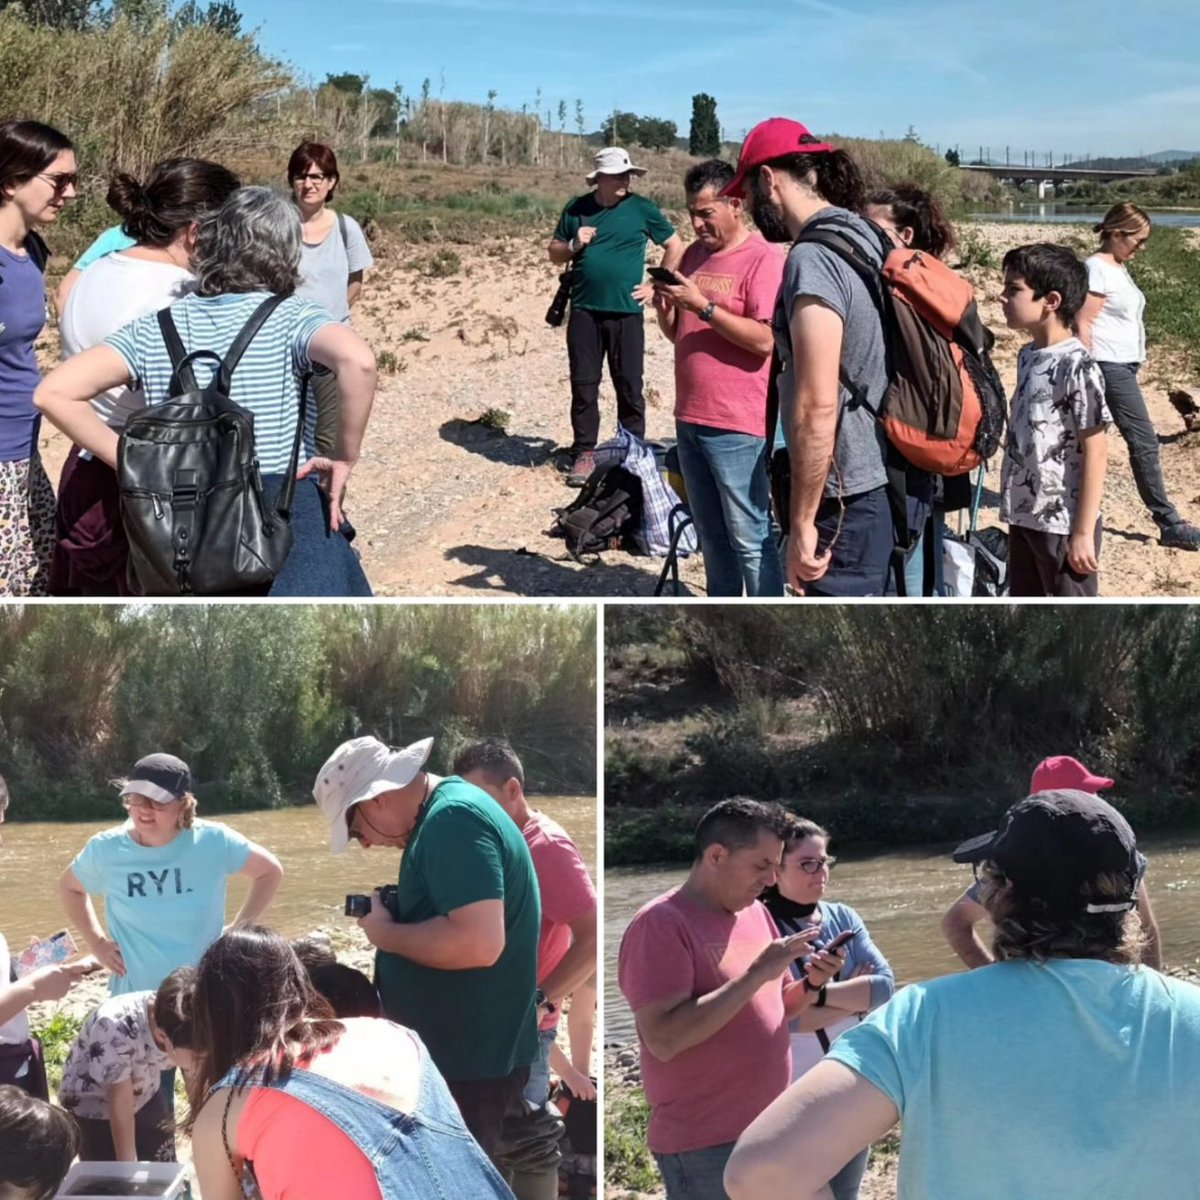 Avui hem participat en la jornada de ciència ciutadana al riu.  Catalogant les mostres de la biodiversitat a l'app #llegimelriu 
#viuelriu 
#Pallejà